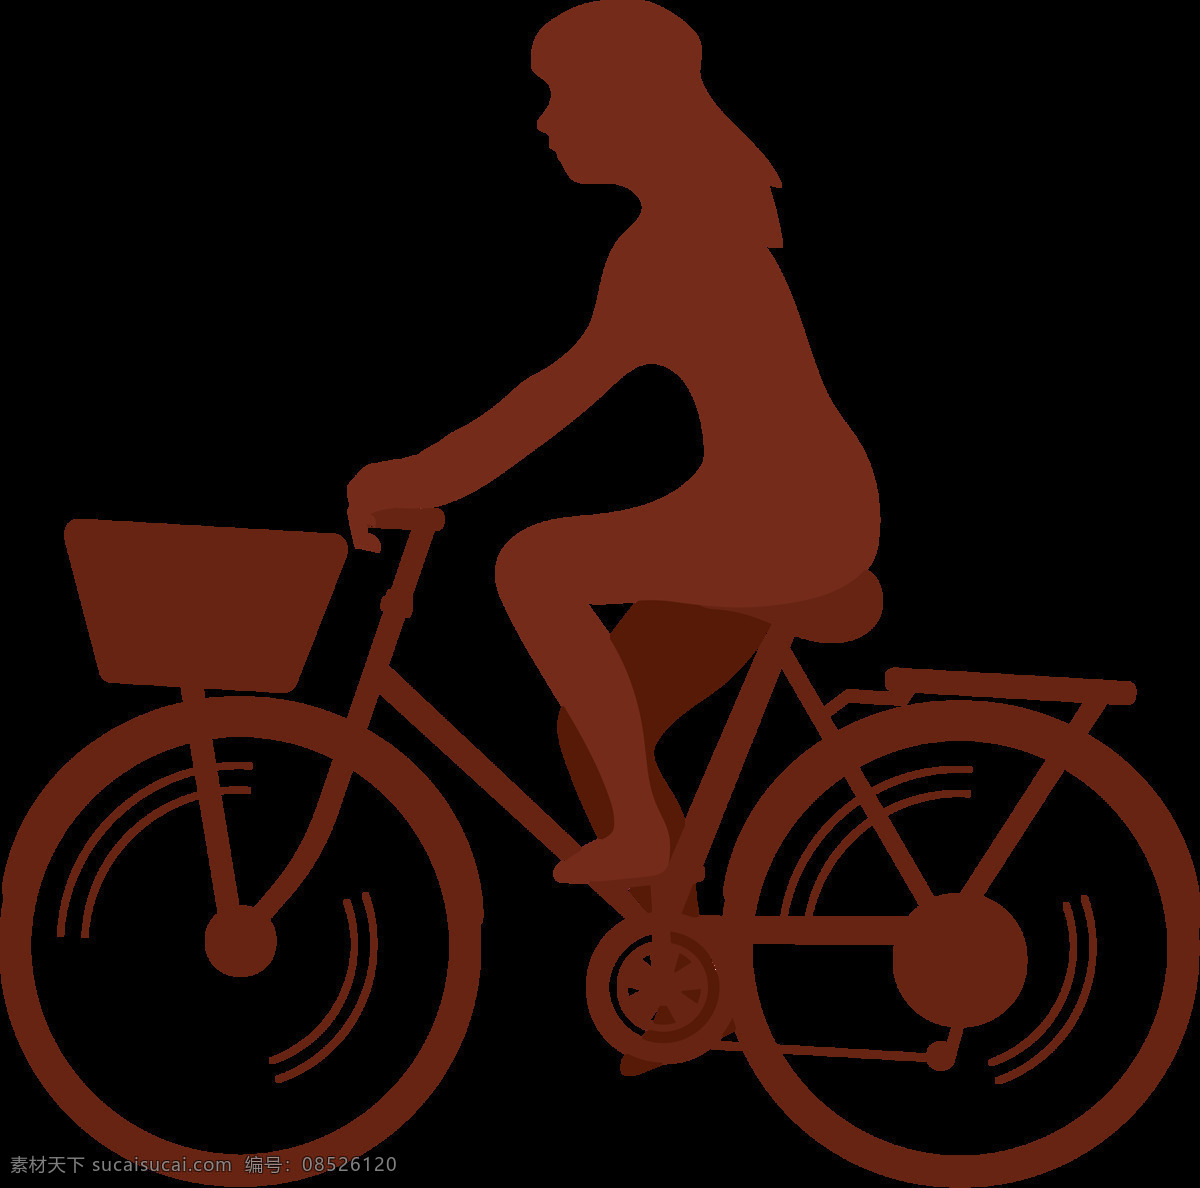 棕色 自行车 剪影 免 抠 透明 图 层 共享单车 女式单车 男式单车 电动车 绿色低碳 绿色环保 环保电动车 健身单车 摩拜 ofo单车 小蓝单车 双人单车 多人单车